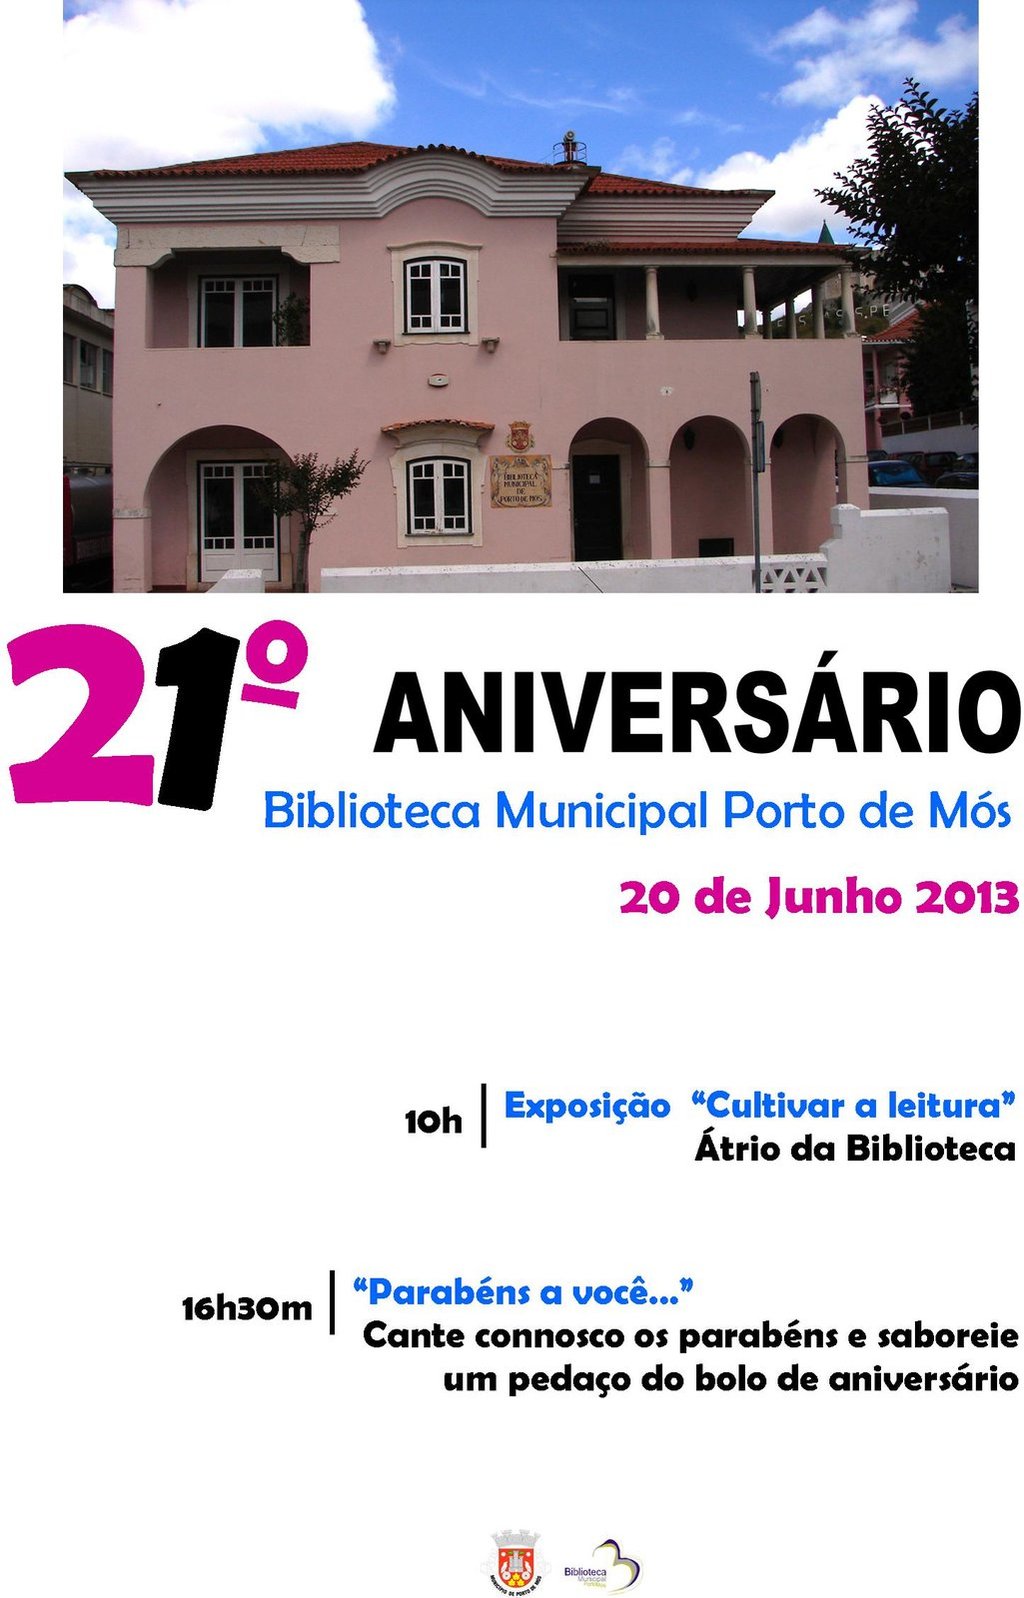 21 Aniversario Boblioteca Municipal de Porto de Mós